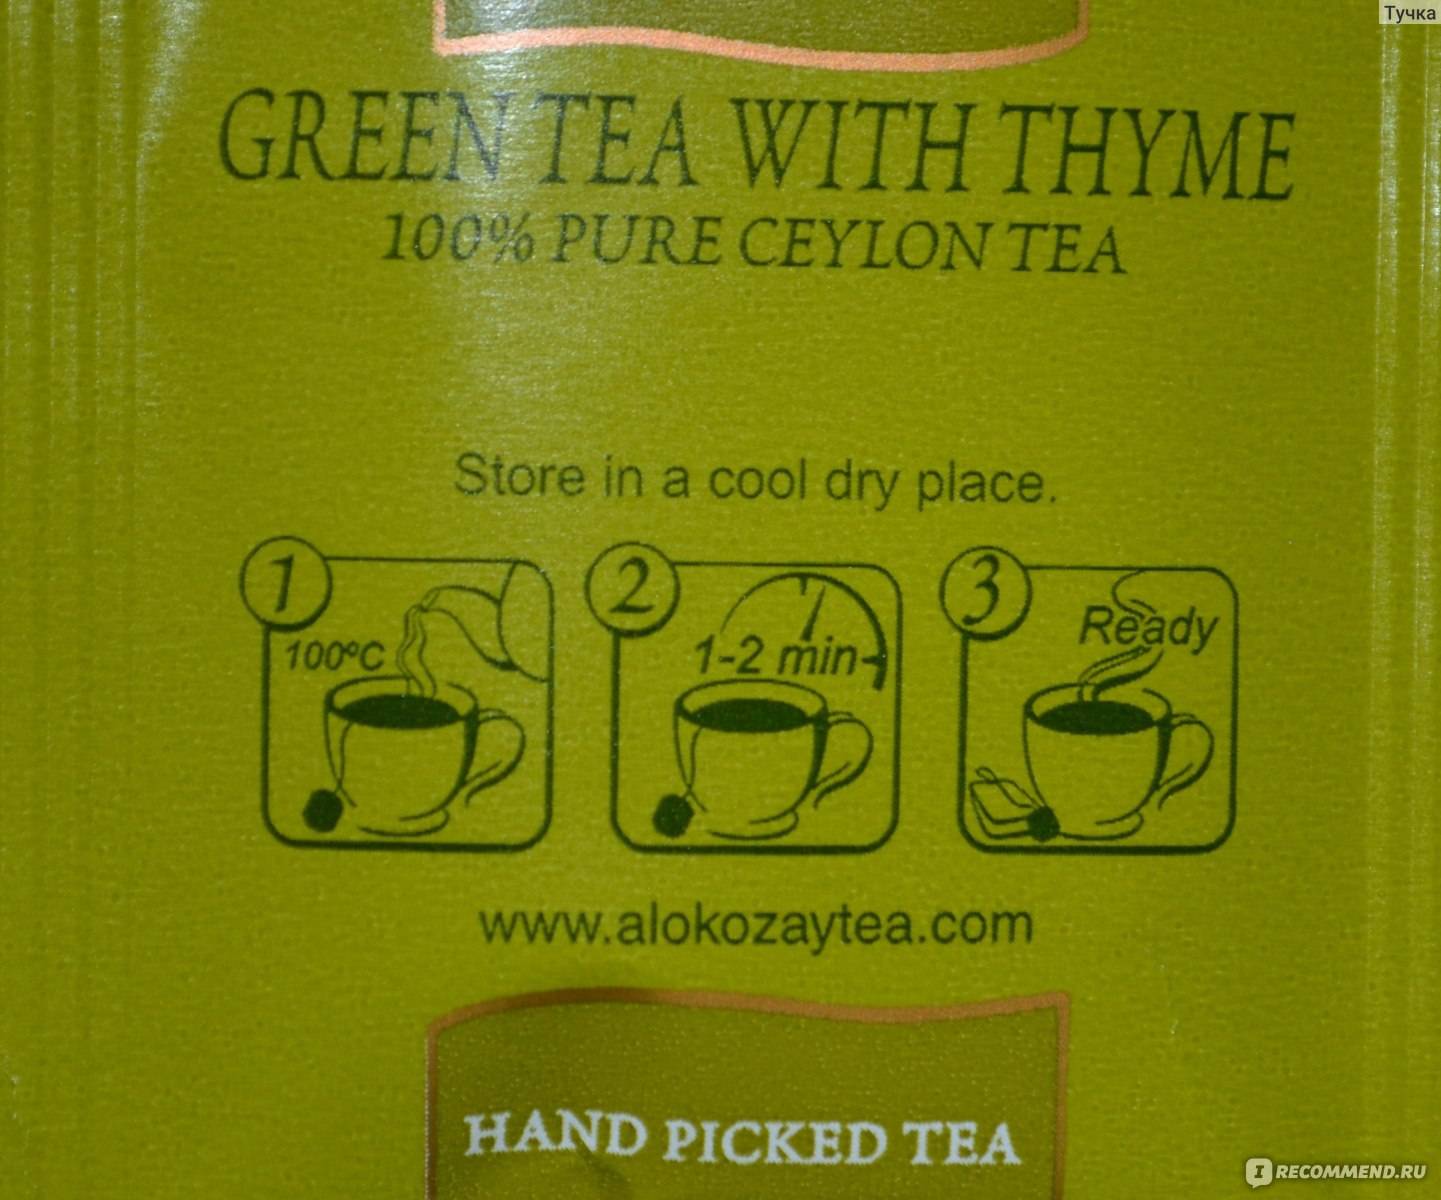 Подробное описание чая Алокозай от производителя до способов отличить подделку